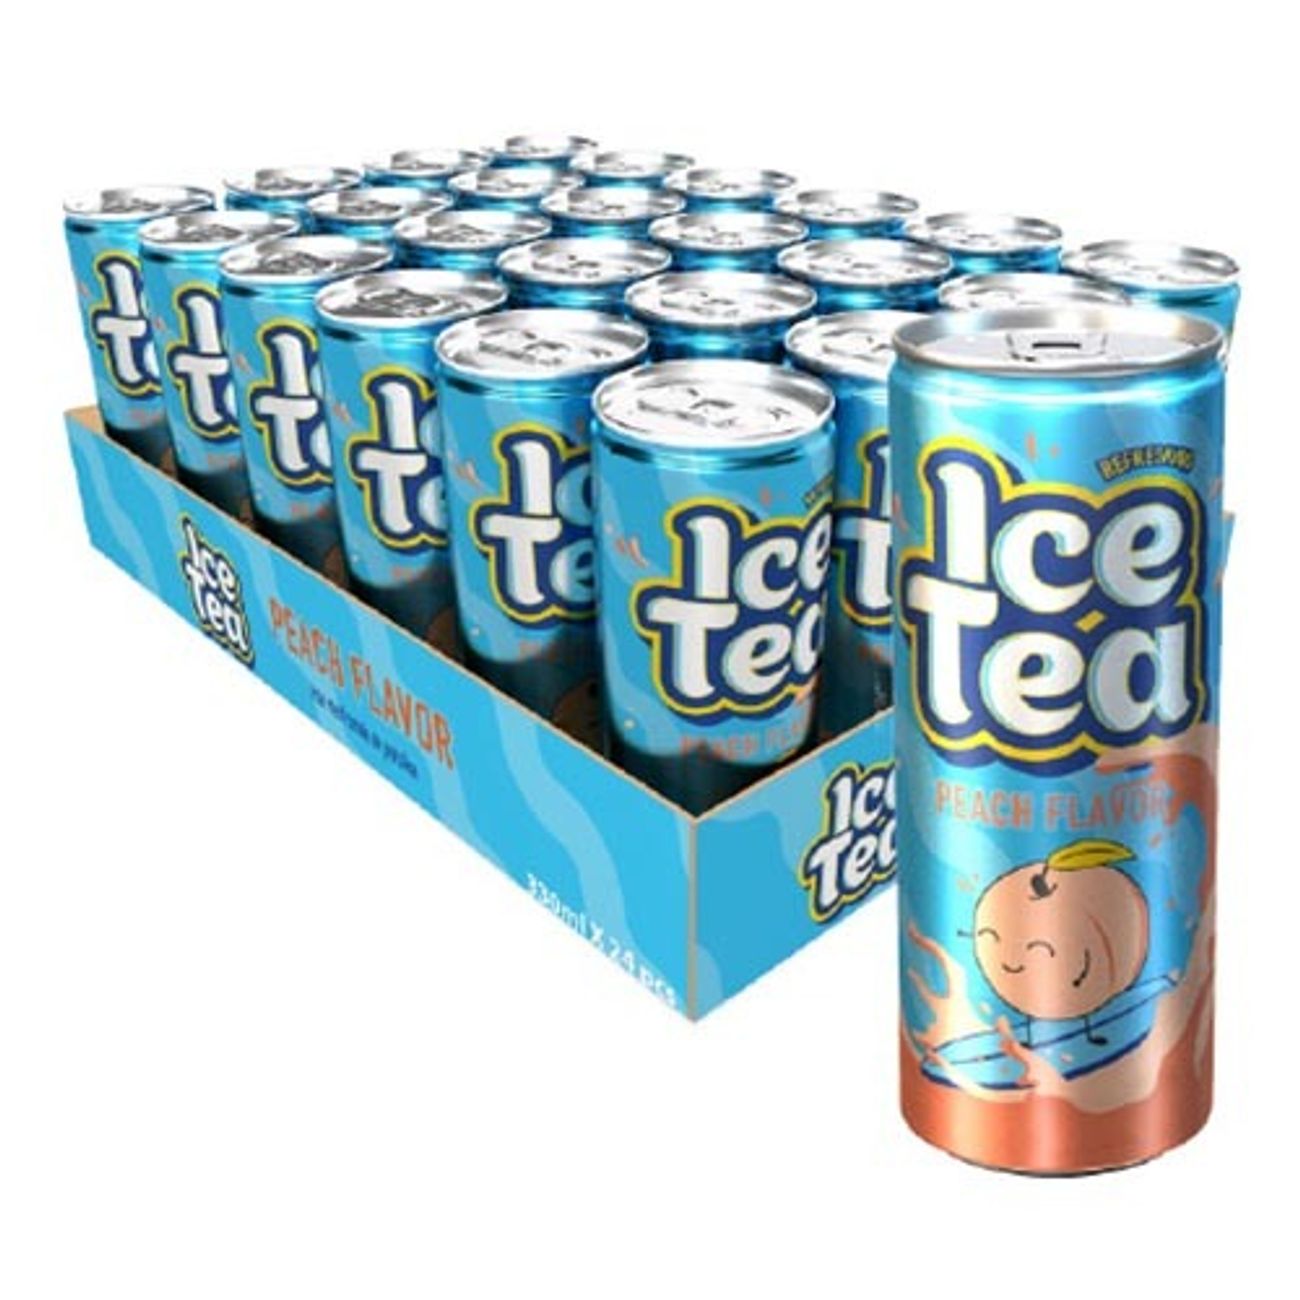 ice-tea-peach-1